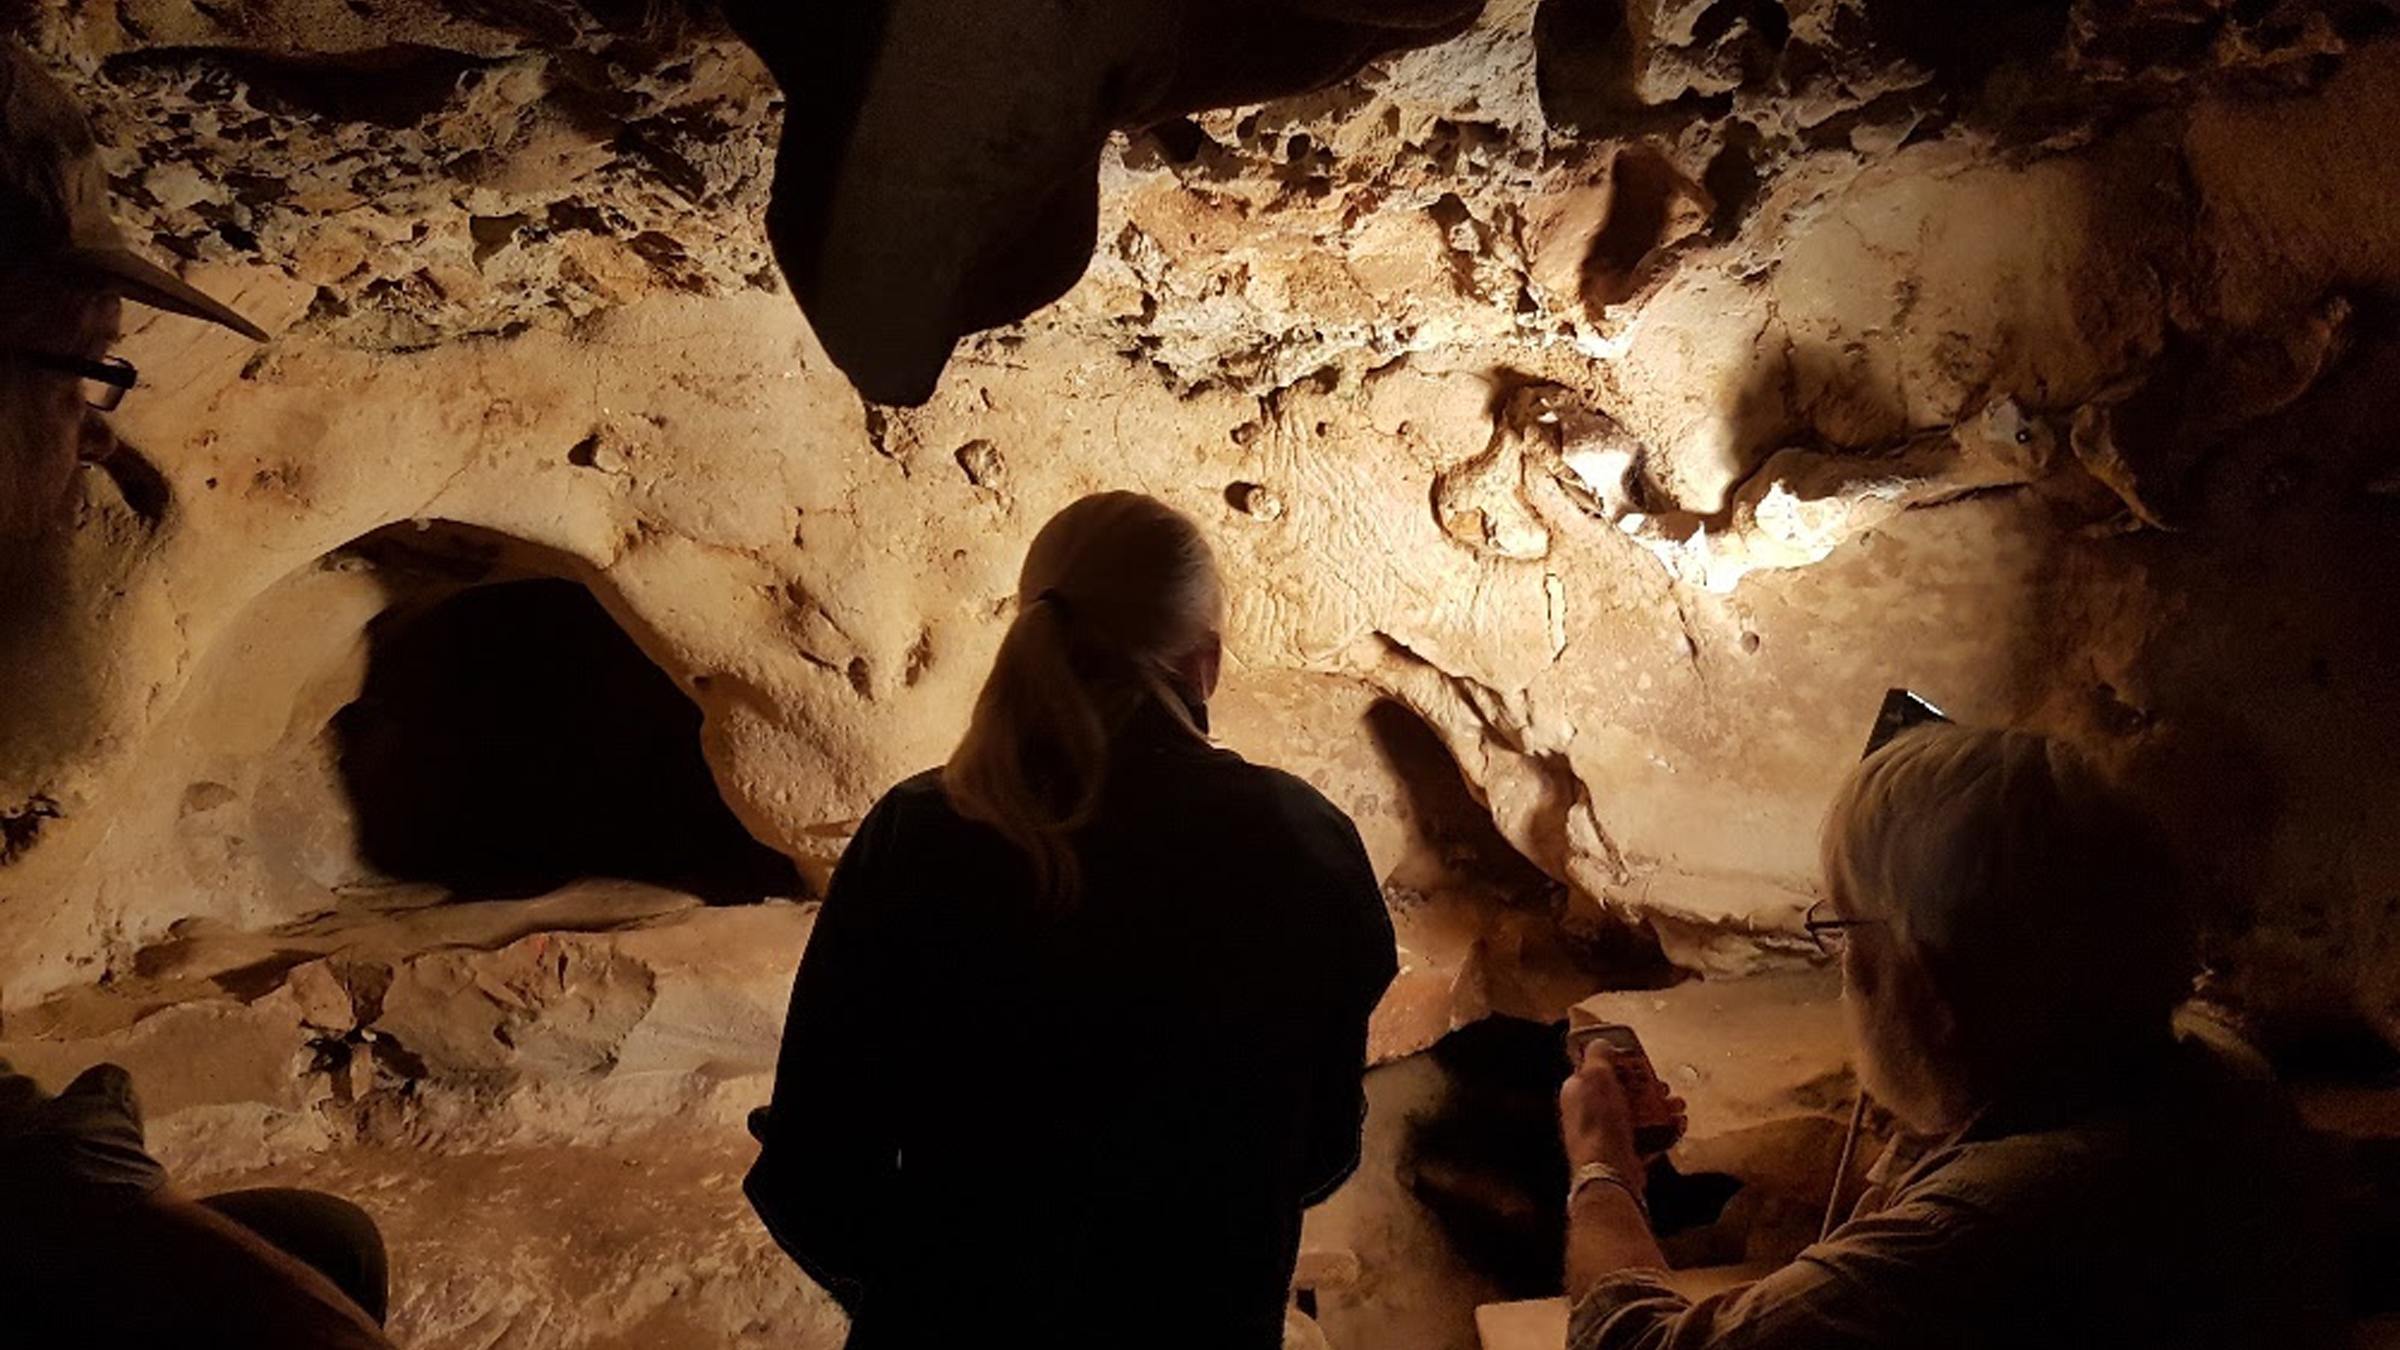 નિએન્ડરથલ્સે યુરોપની સૌથી જૂની 'ઈરાદાપૂર્વકની' કોતરણી 75,000 વર્ષ પહેલાં બનાવી હતી, અભ્યાસ સૂચવે છે 1